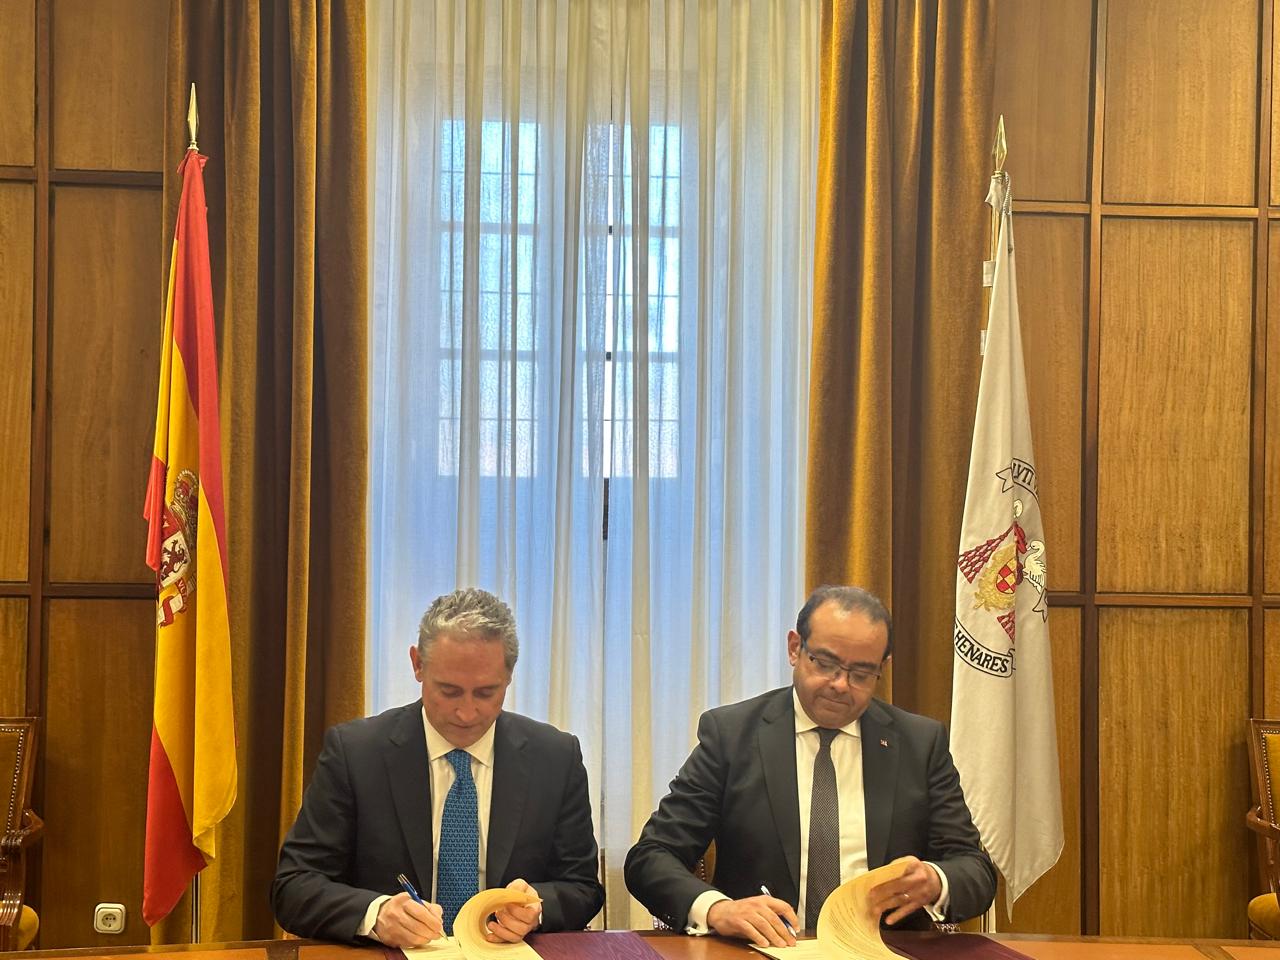 Le Président de l’Université Sultan Moulay Slimane prend part à la cérémonie de signature de plusieurs conventions avec les universités espagnoles